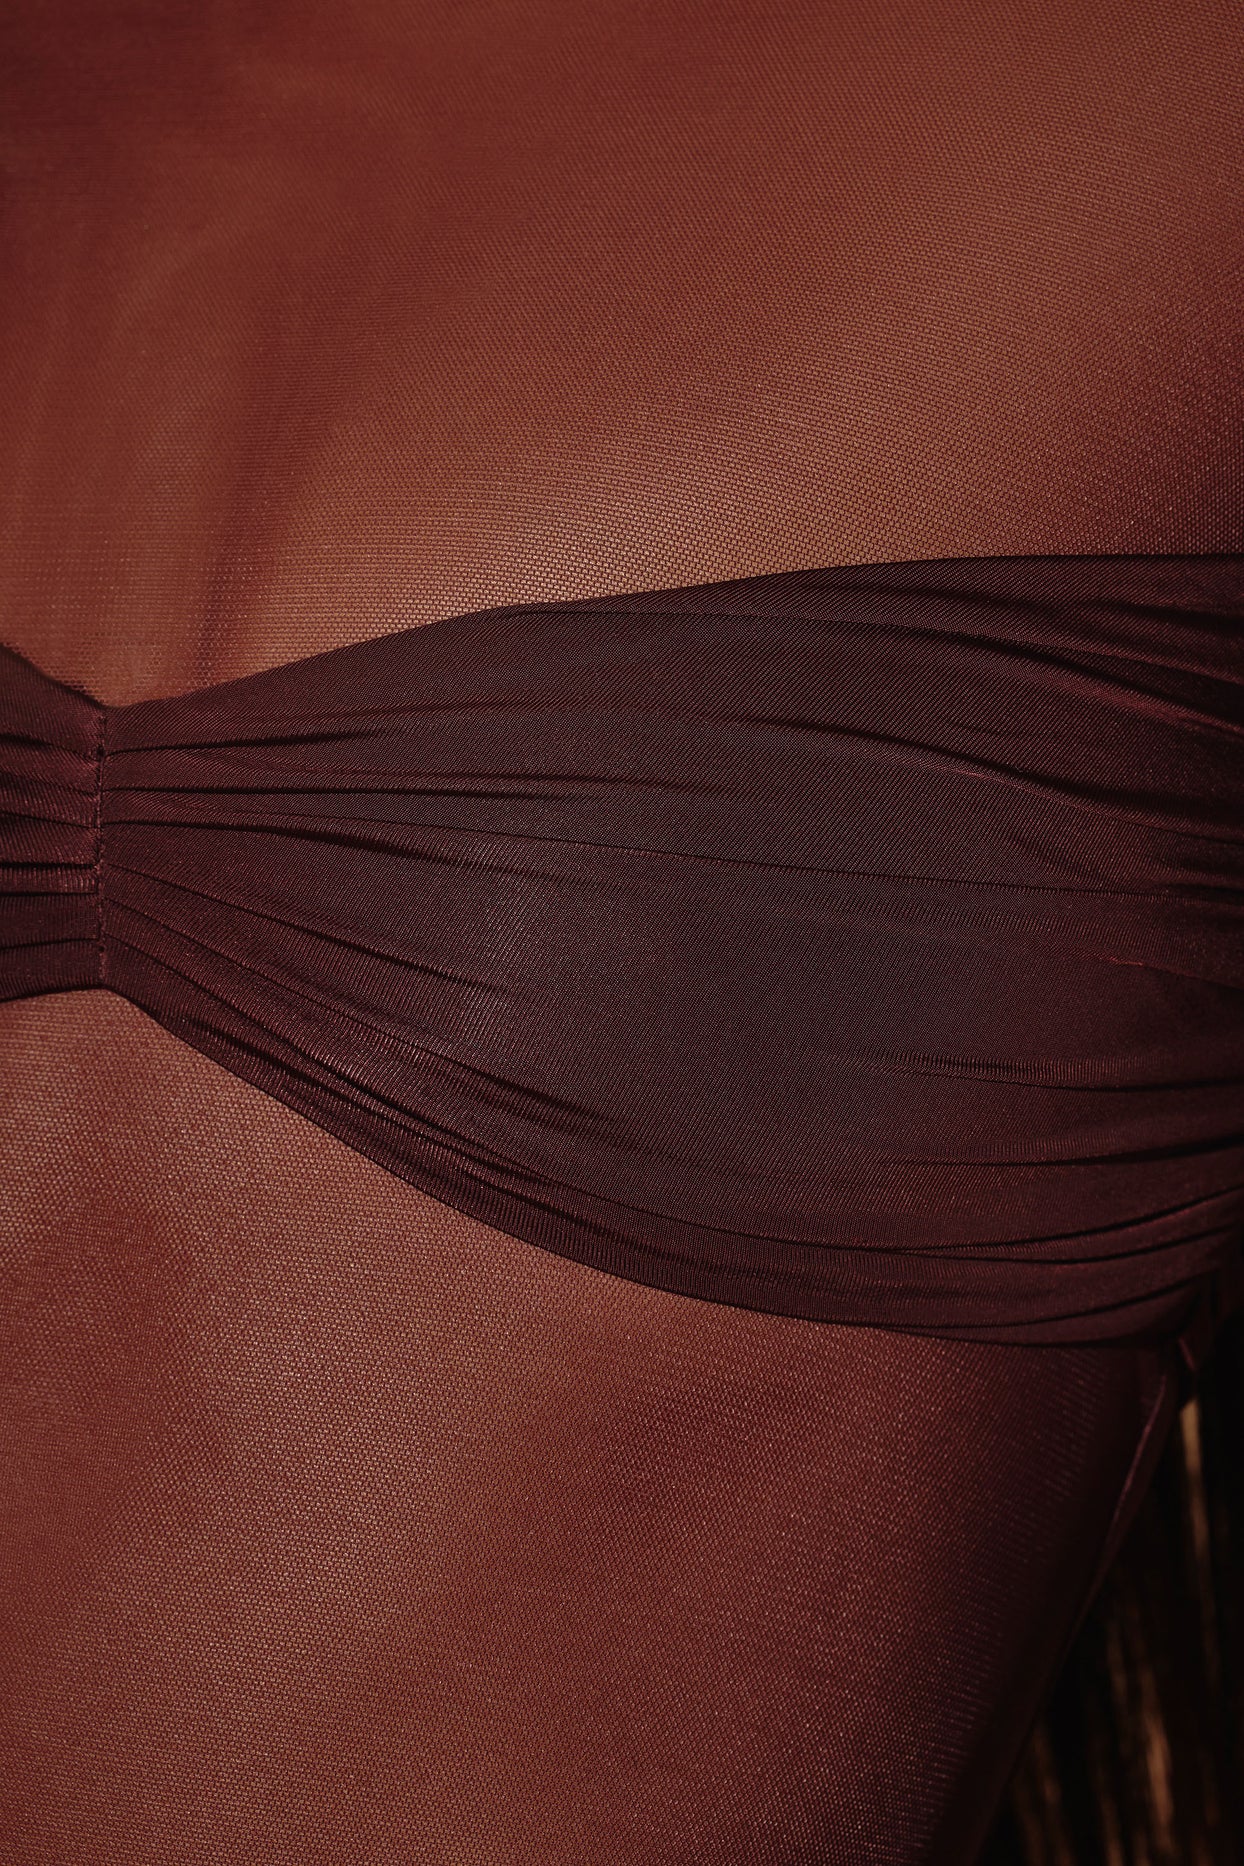 Przezroczysta, panelowa sukienka mini z długim rękawem w kolorze brązowym